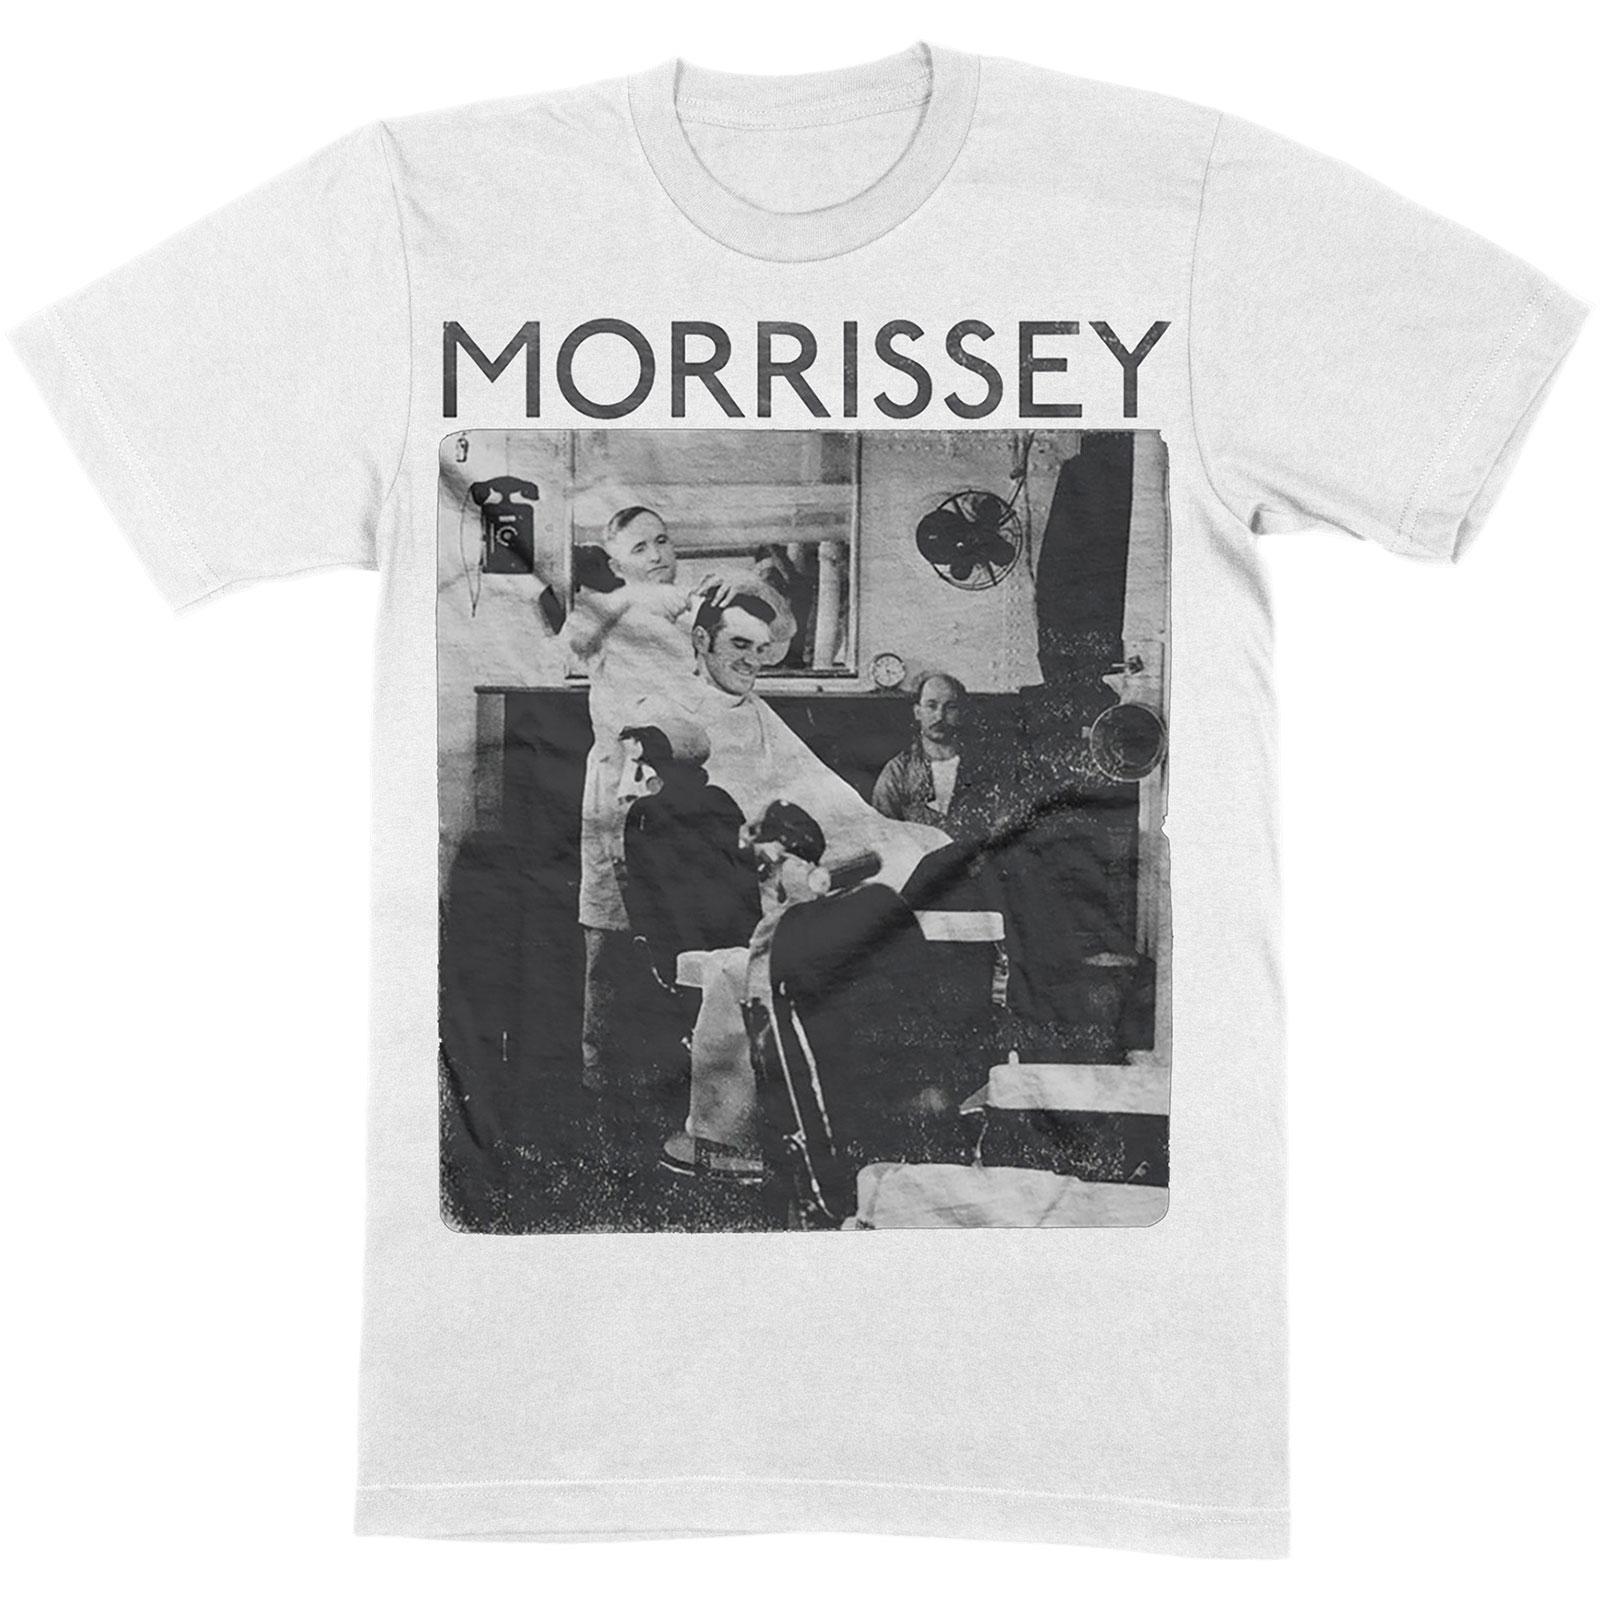 Morrissey Unisex Adult Barber Shop Cotton T-Shirt (White) (XXL)